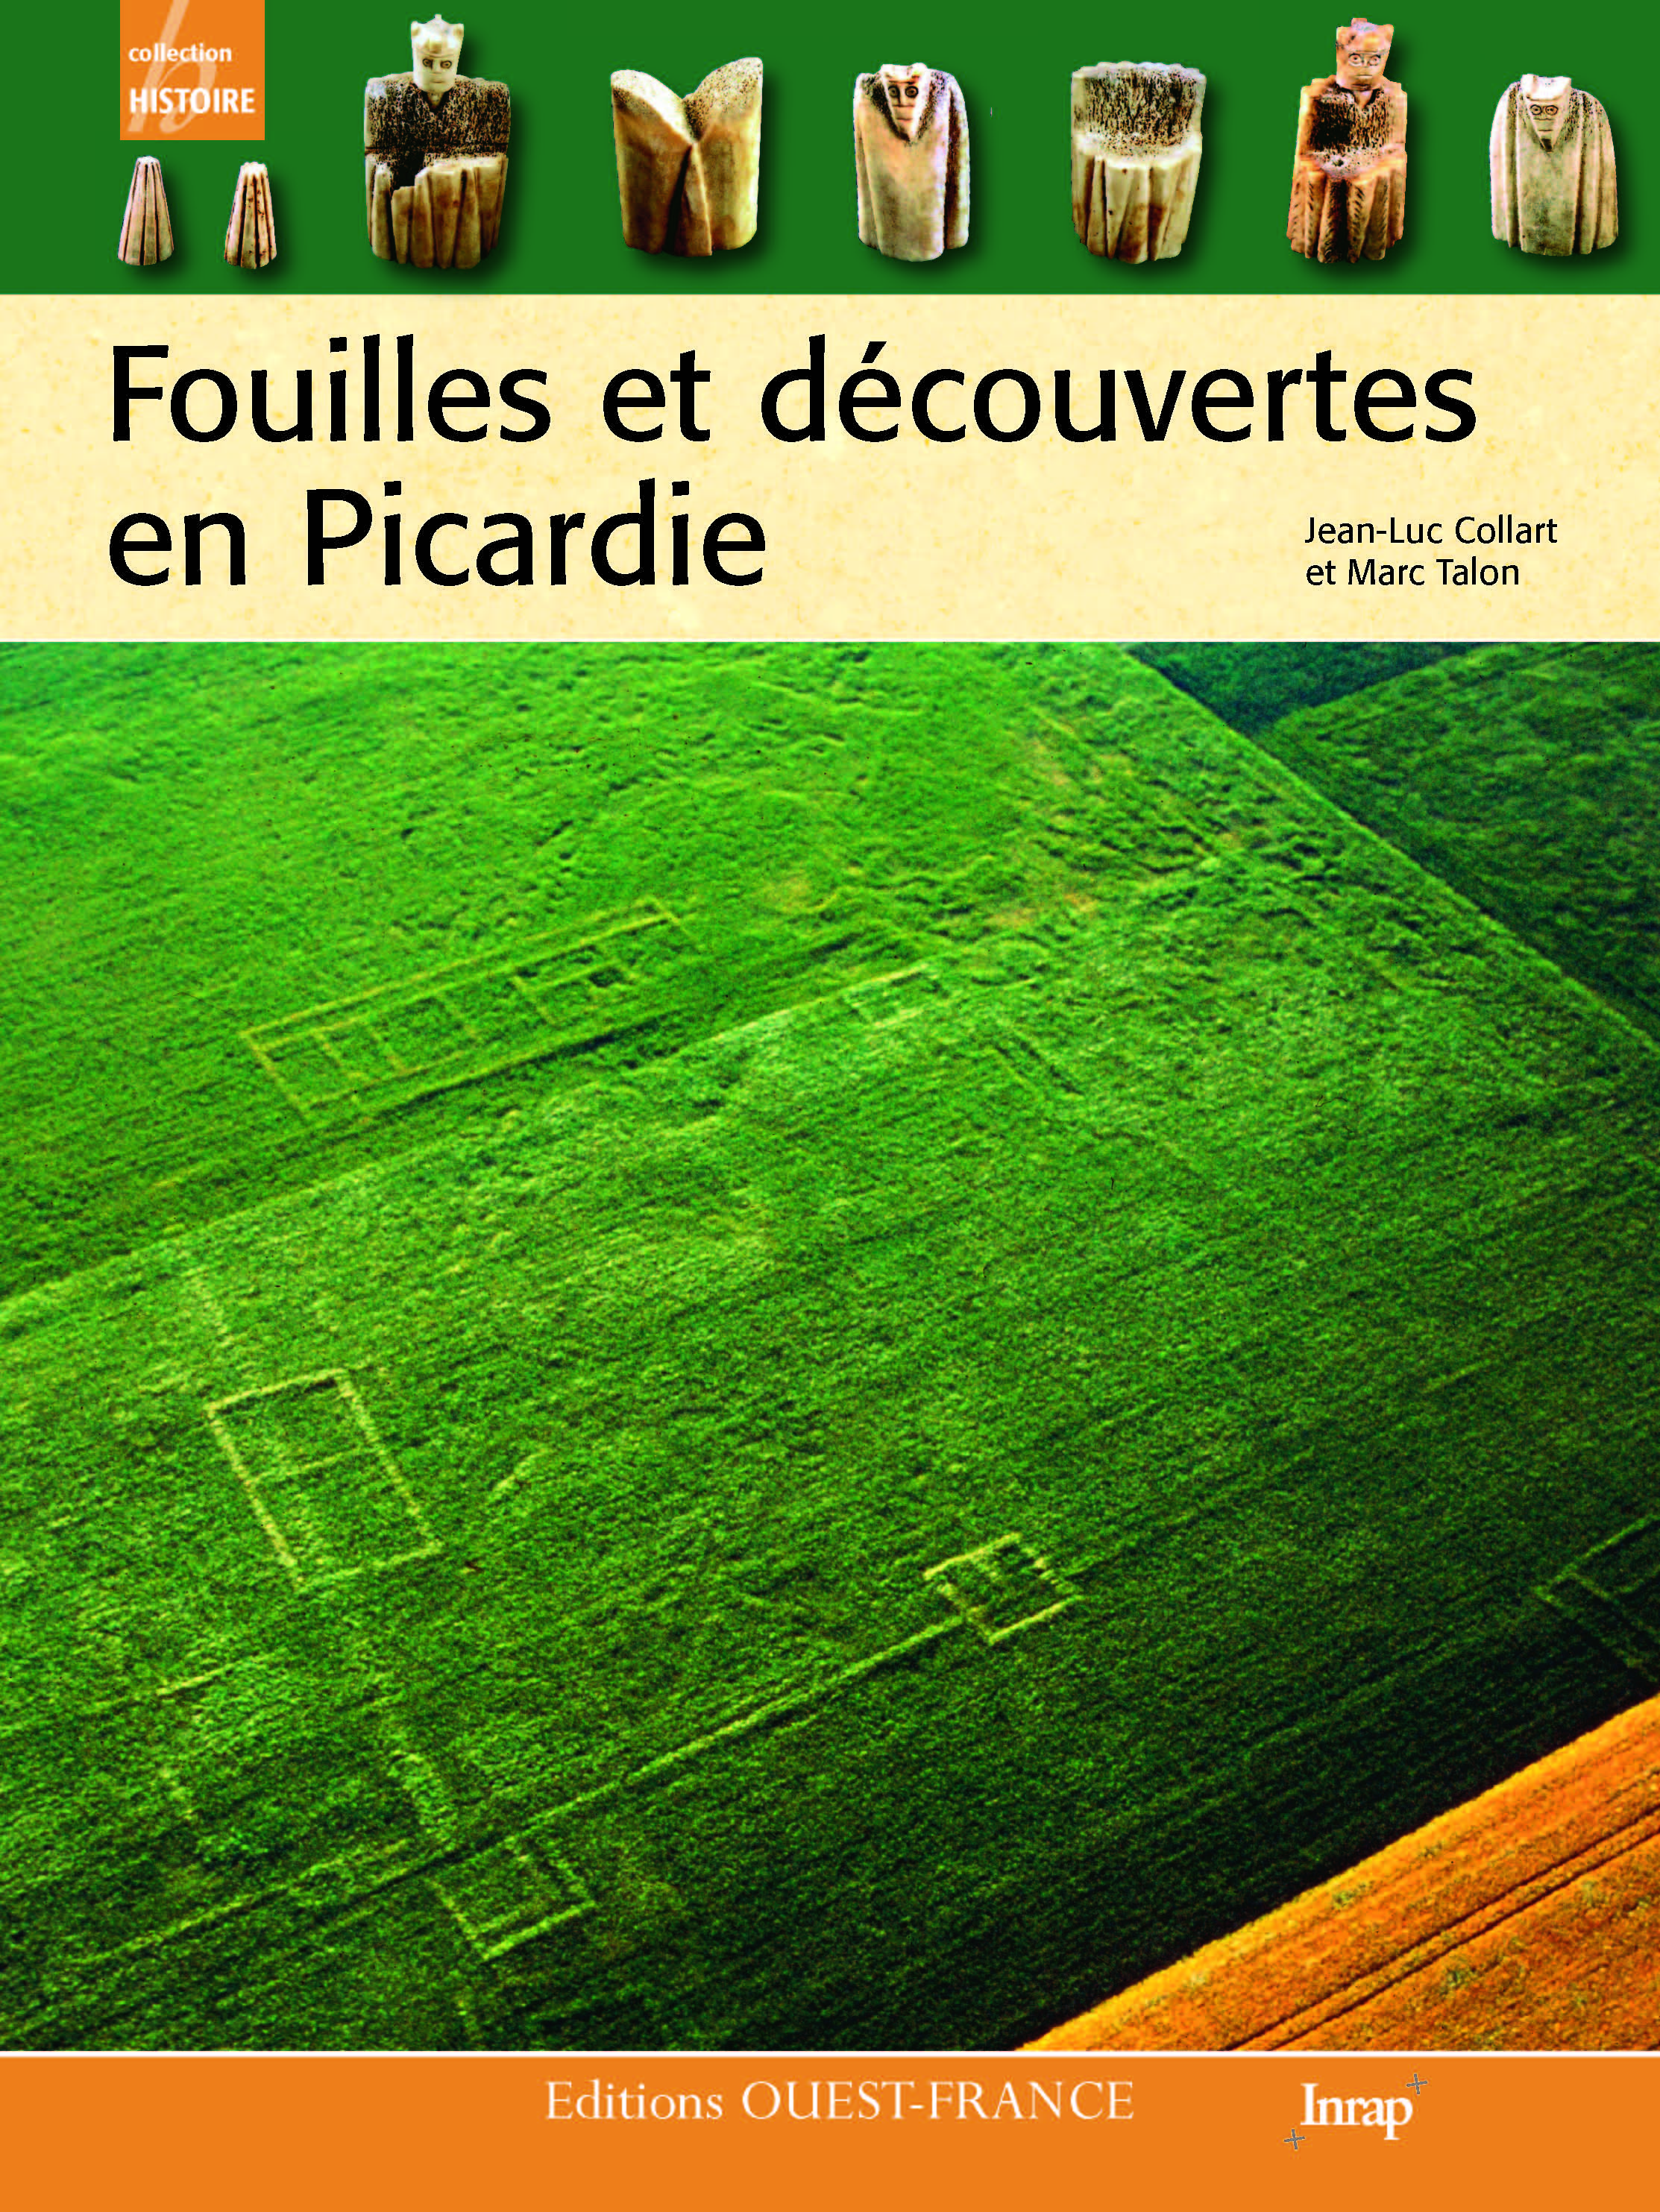 Fouilles et découvertes en Picardie